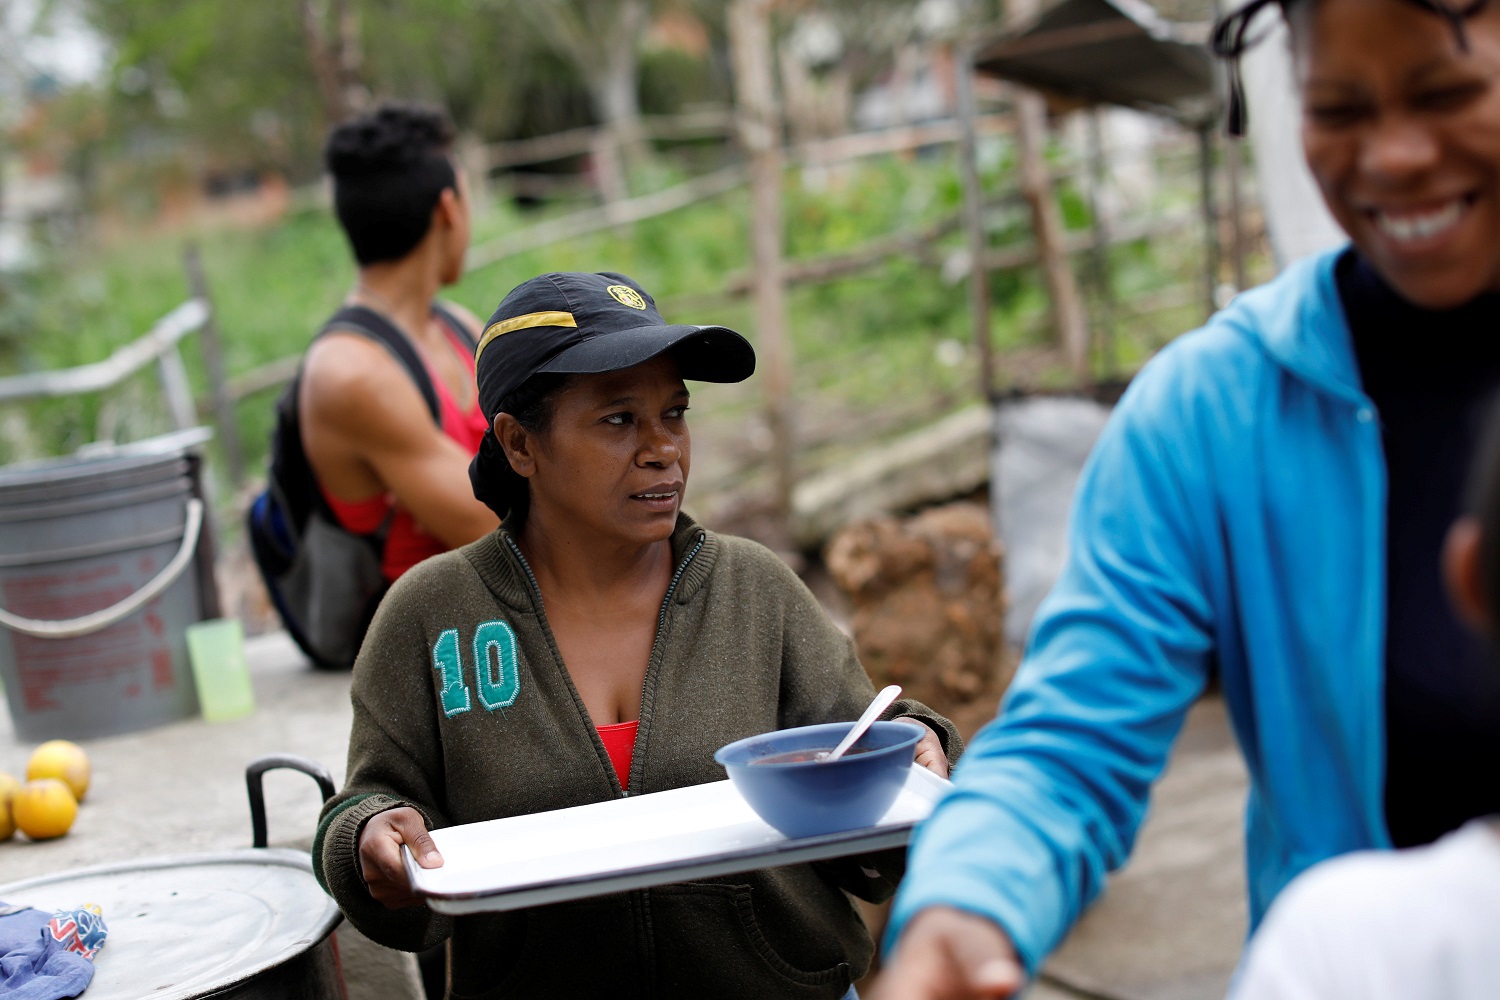 Los partidarios de la oposición que trabajan como voluntarios sirven comida en un comedor para niños, en el barrio La Vega de Caracas, Venezuela, el 23 de mayo de 2017. Foto tomada el 23 de mayo de 2017. REUTERS / Carlos Garcia Rawlins